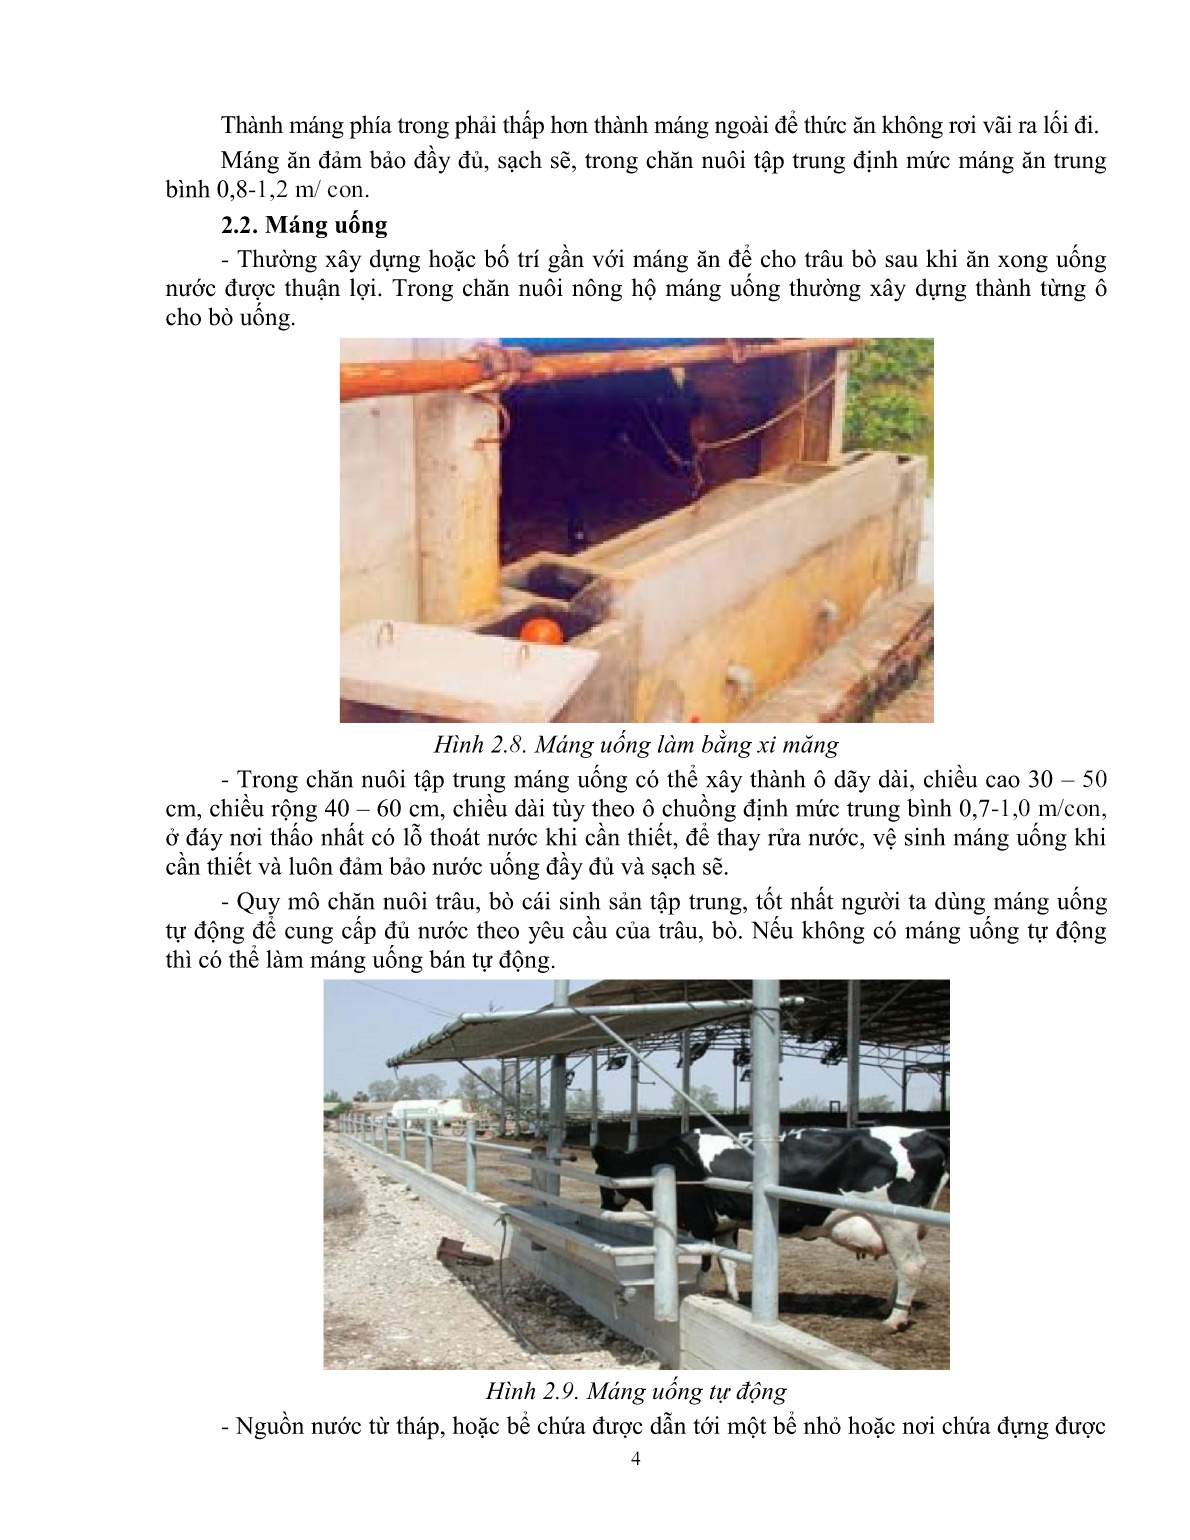 Giáo trình mô đun Nuôi trâu, bò cái sinh sản (Trình độ: Đào tạo dưới 3 tháng) trang 6